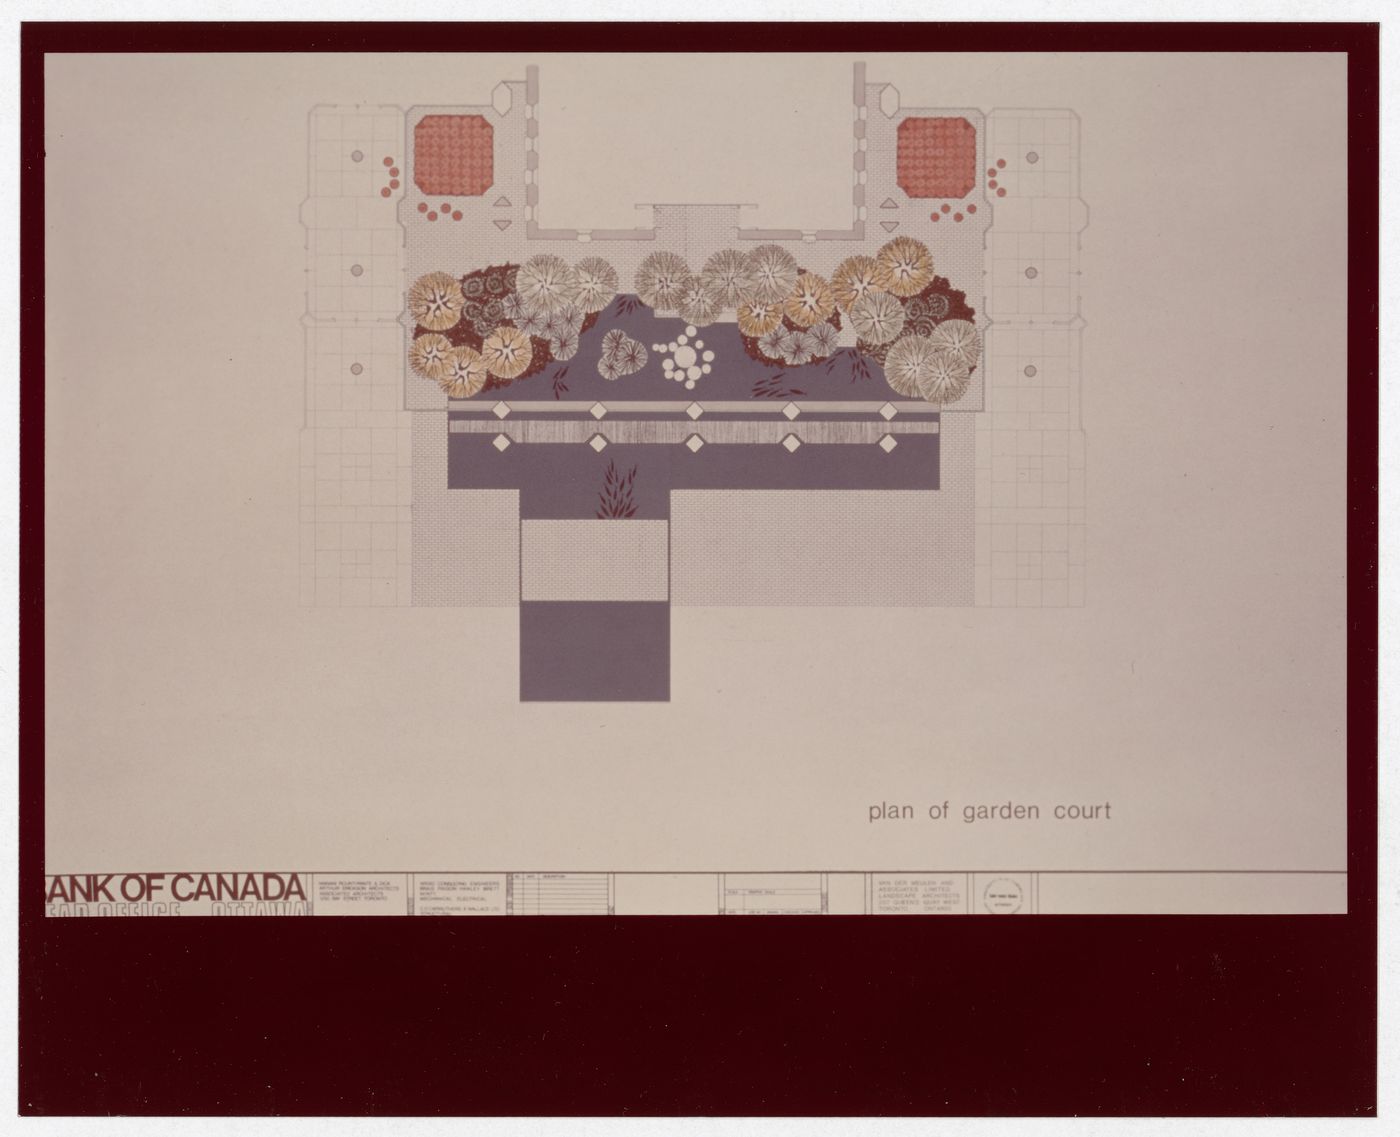 Plan of garden court for Bank of Canada Building, Ottawa, Ontario